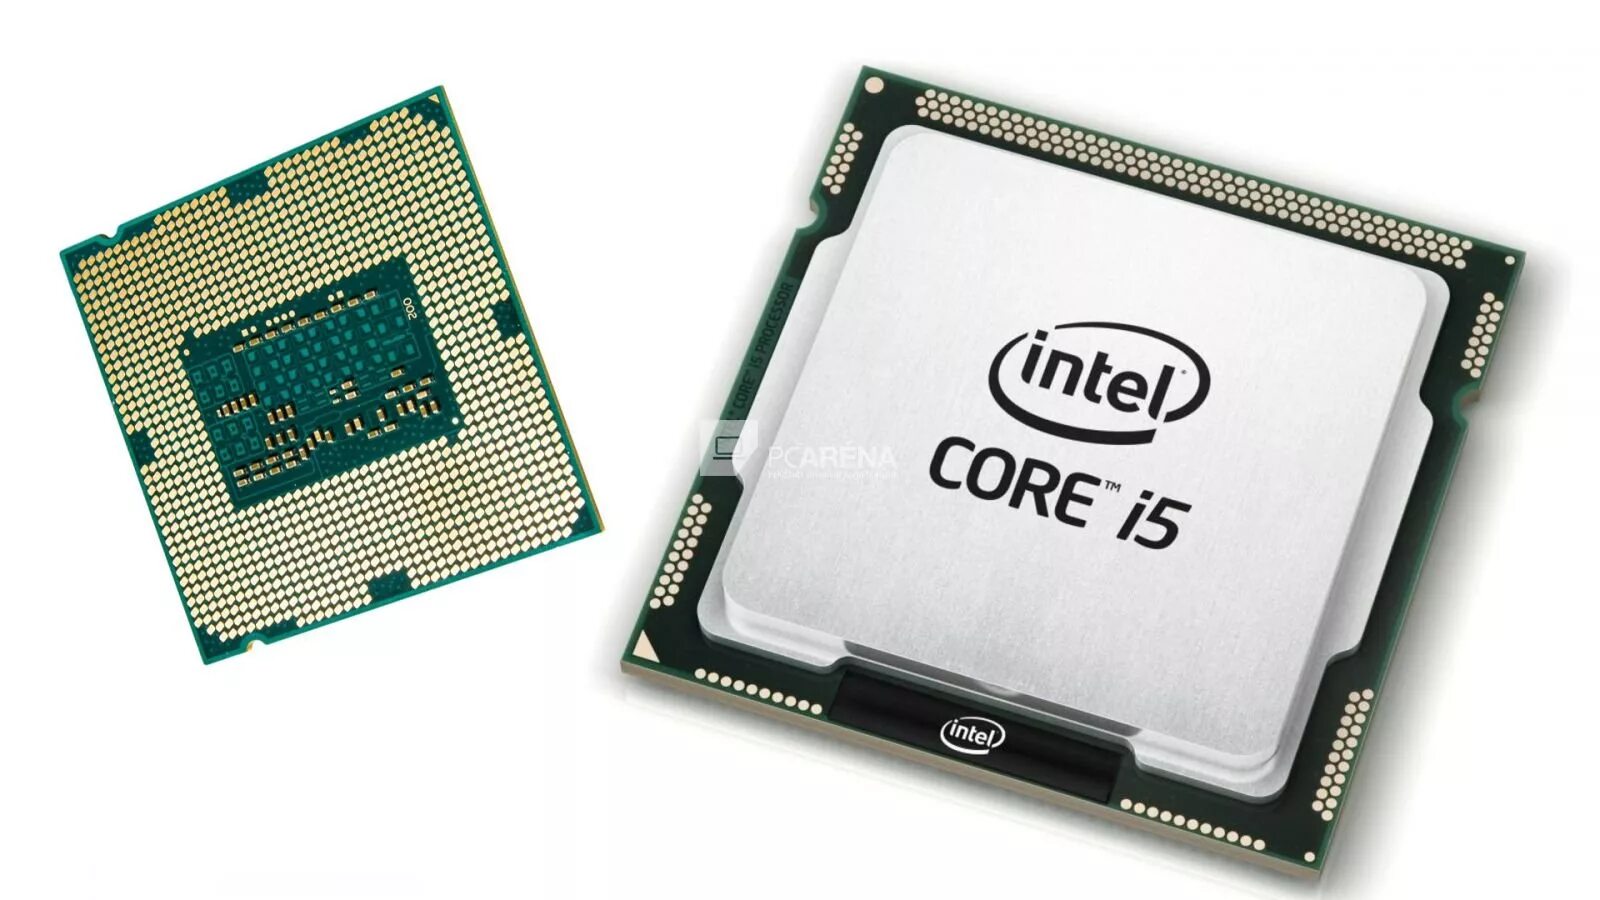 Процессор Intel Core i5 2400. Процессор Intel Core i5 inside. Intel Core i5 2400 сокет. Процессор Intel Core i5 5500. Core i8